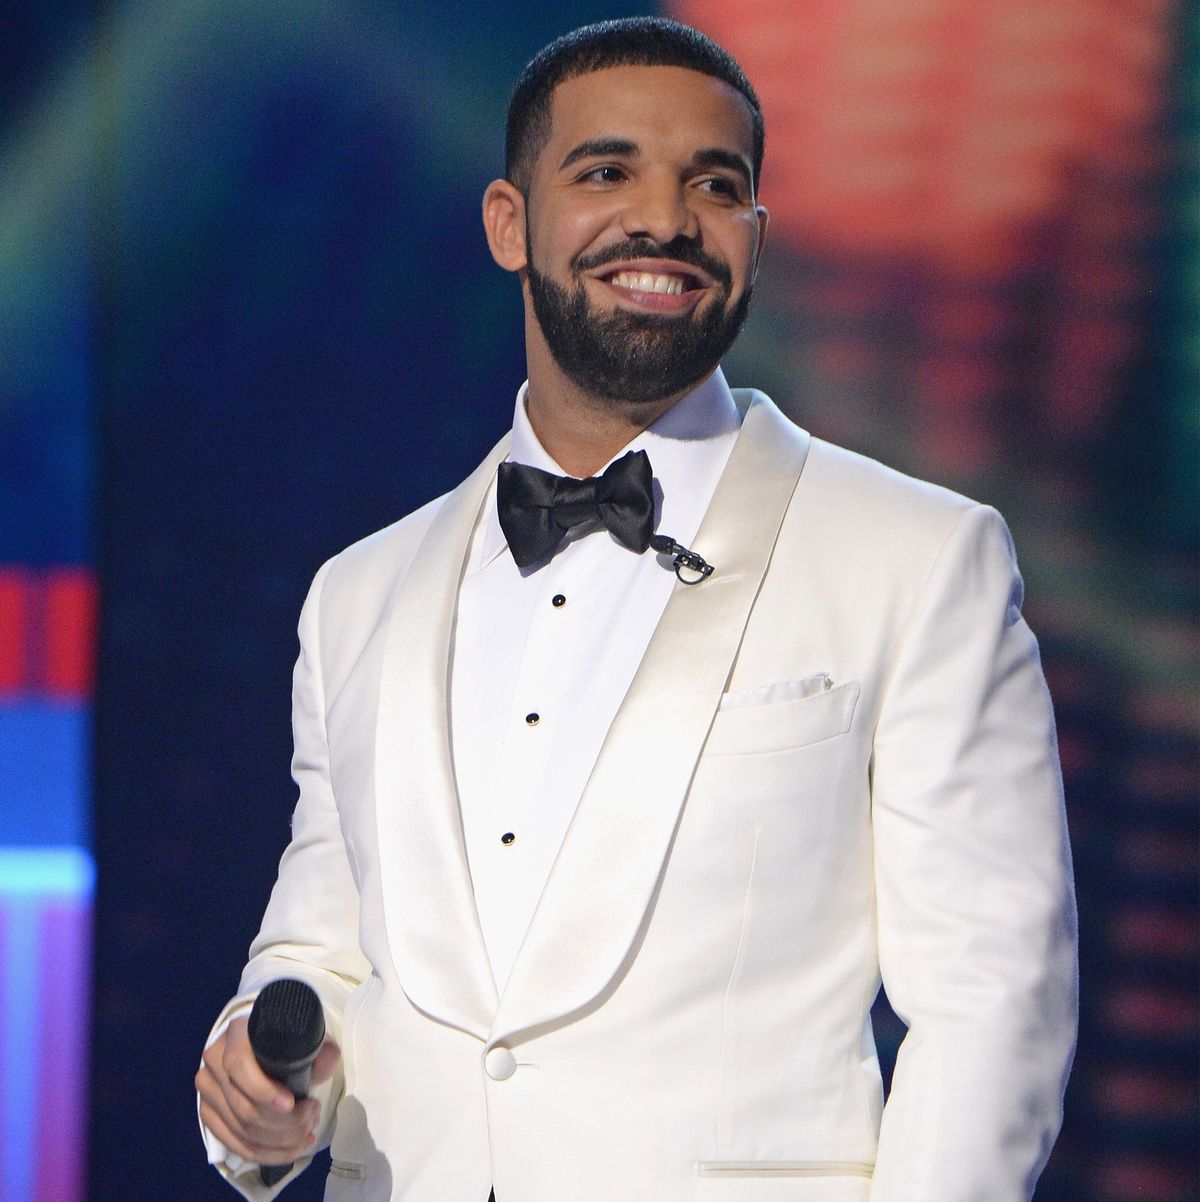 Drake at the 2017 NBA Awards Live